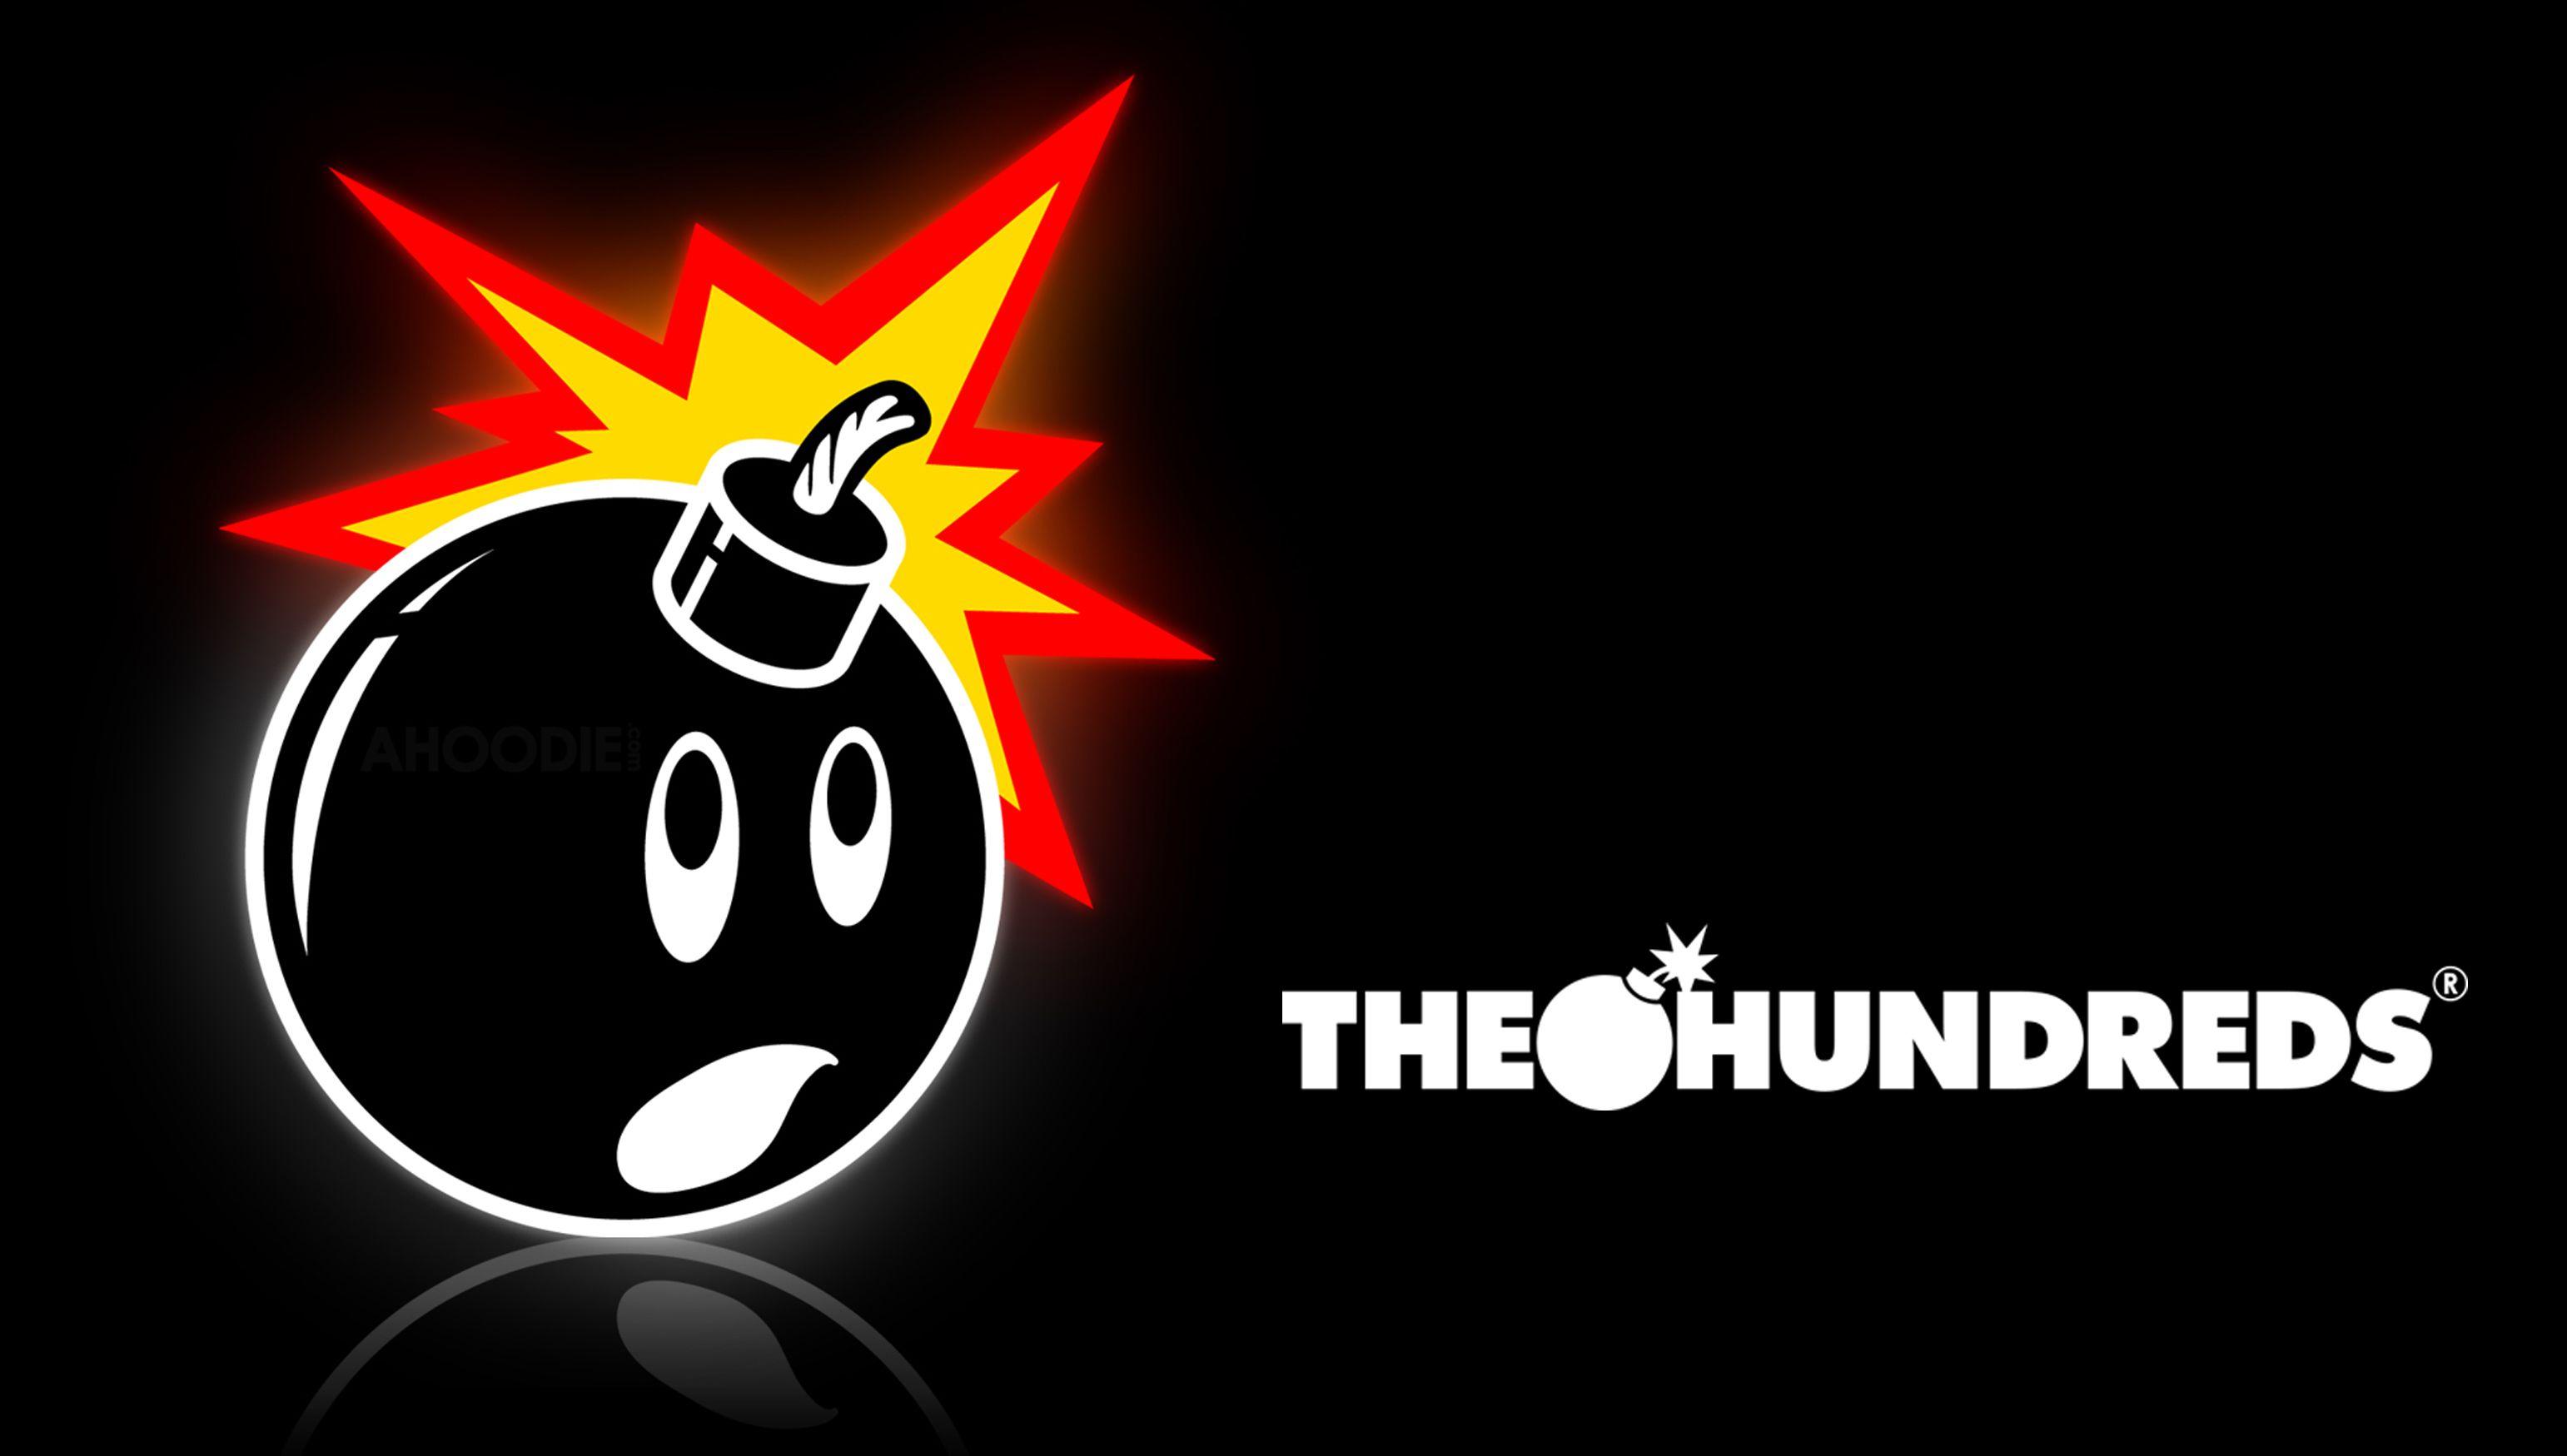 The Hundreds Logo - The hundreds Logos